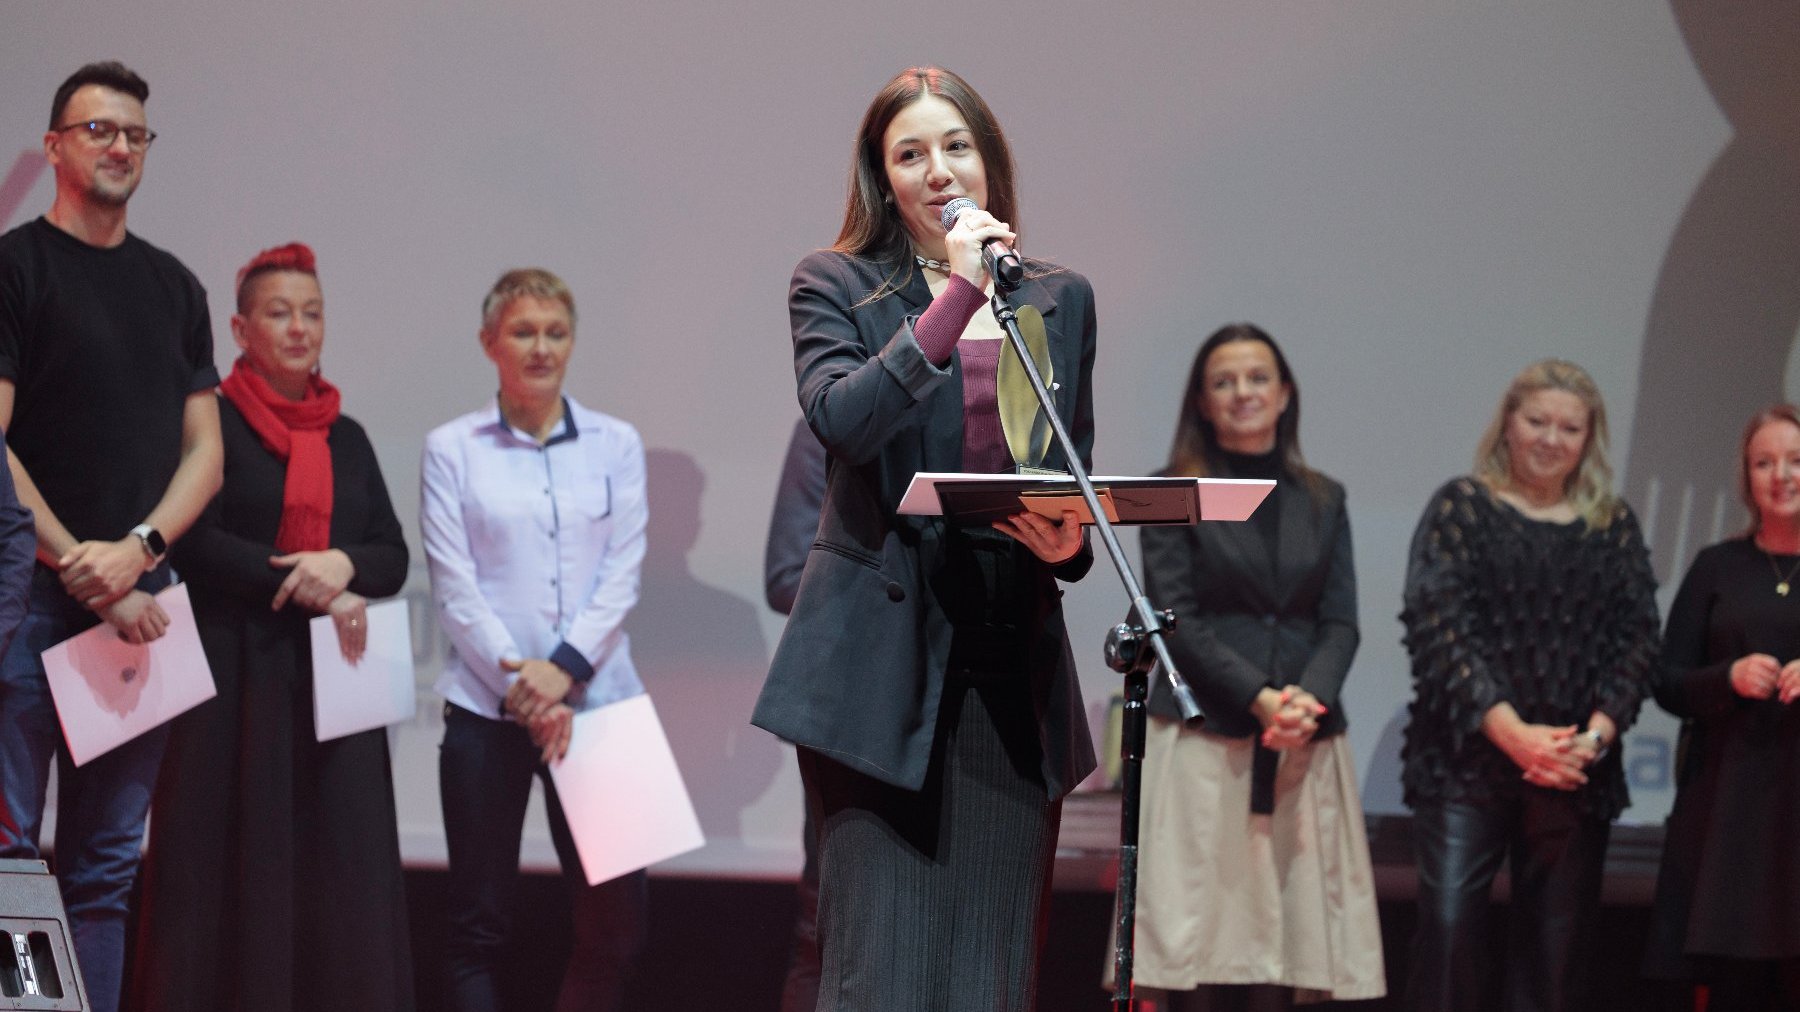 Nagrodę w kategorii Indywidualnej im. dr Wandy Błeńskiej otrzymała Maria Andruchiw, fot. CK Zamek.